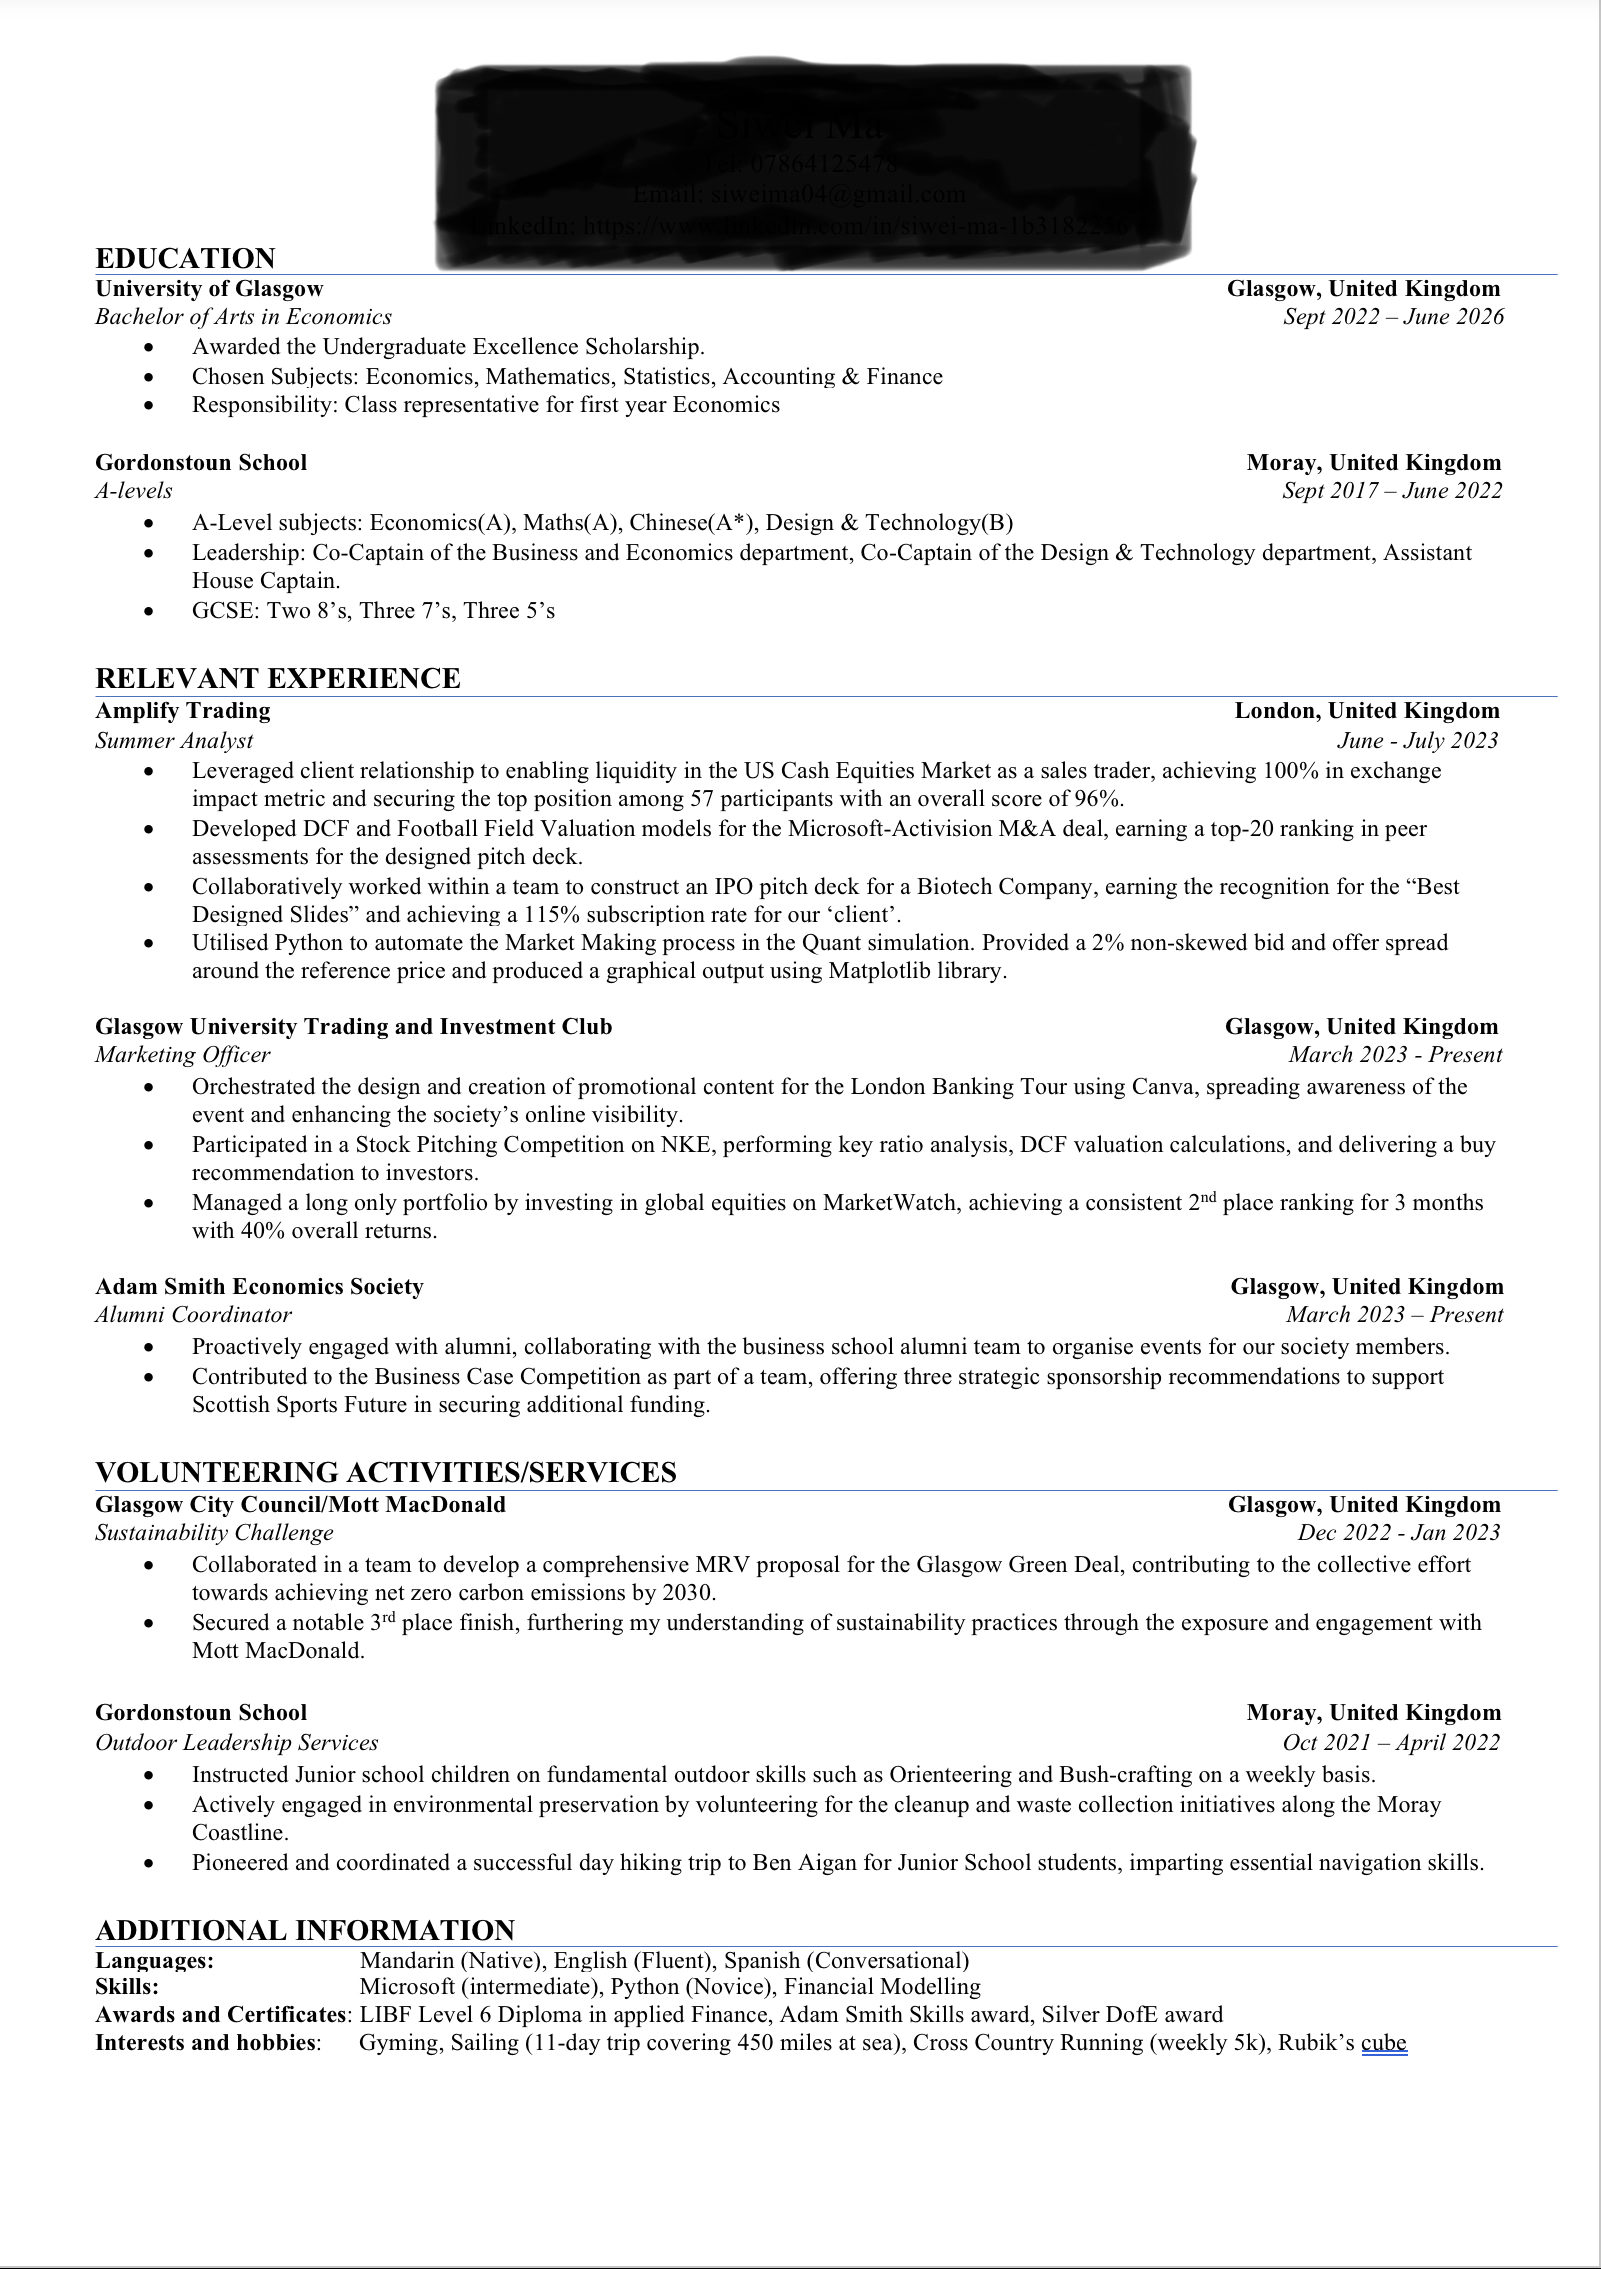 My resume